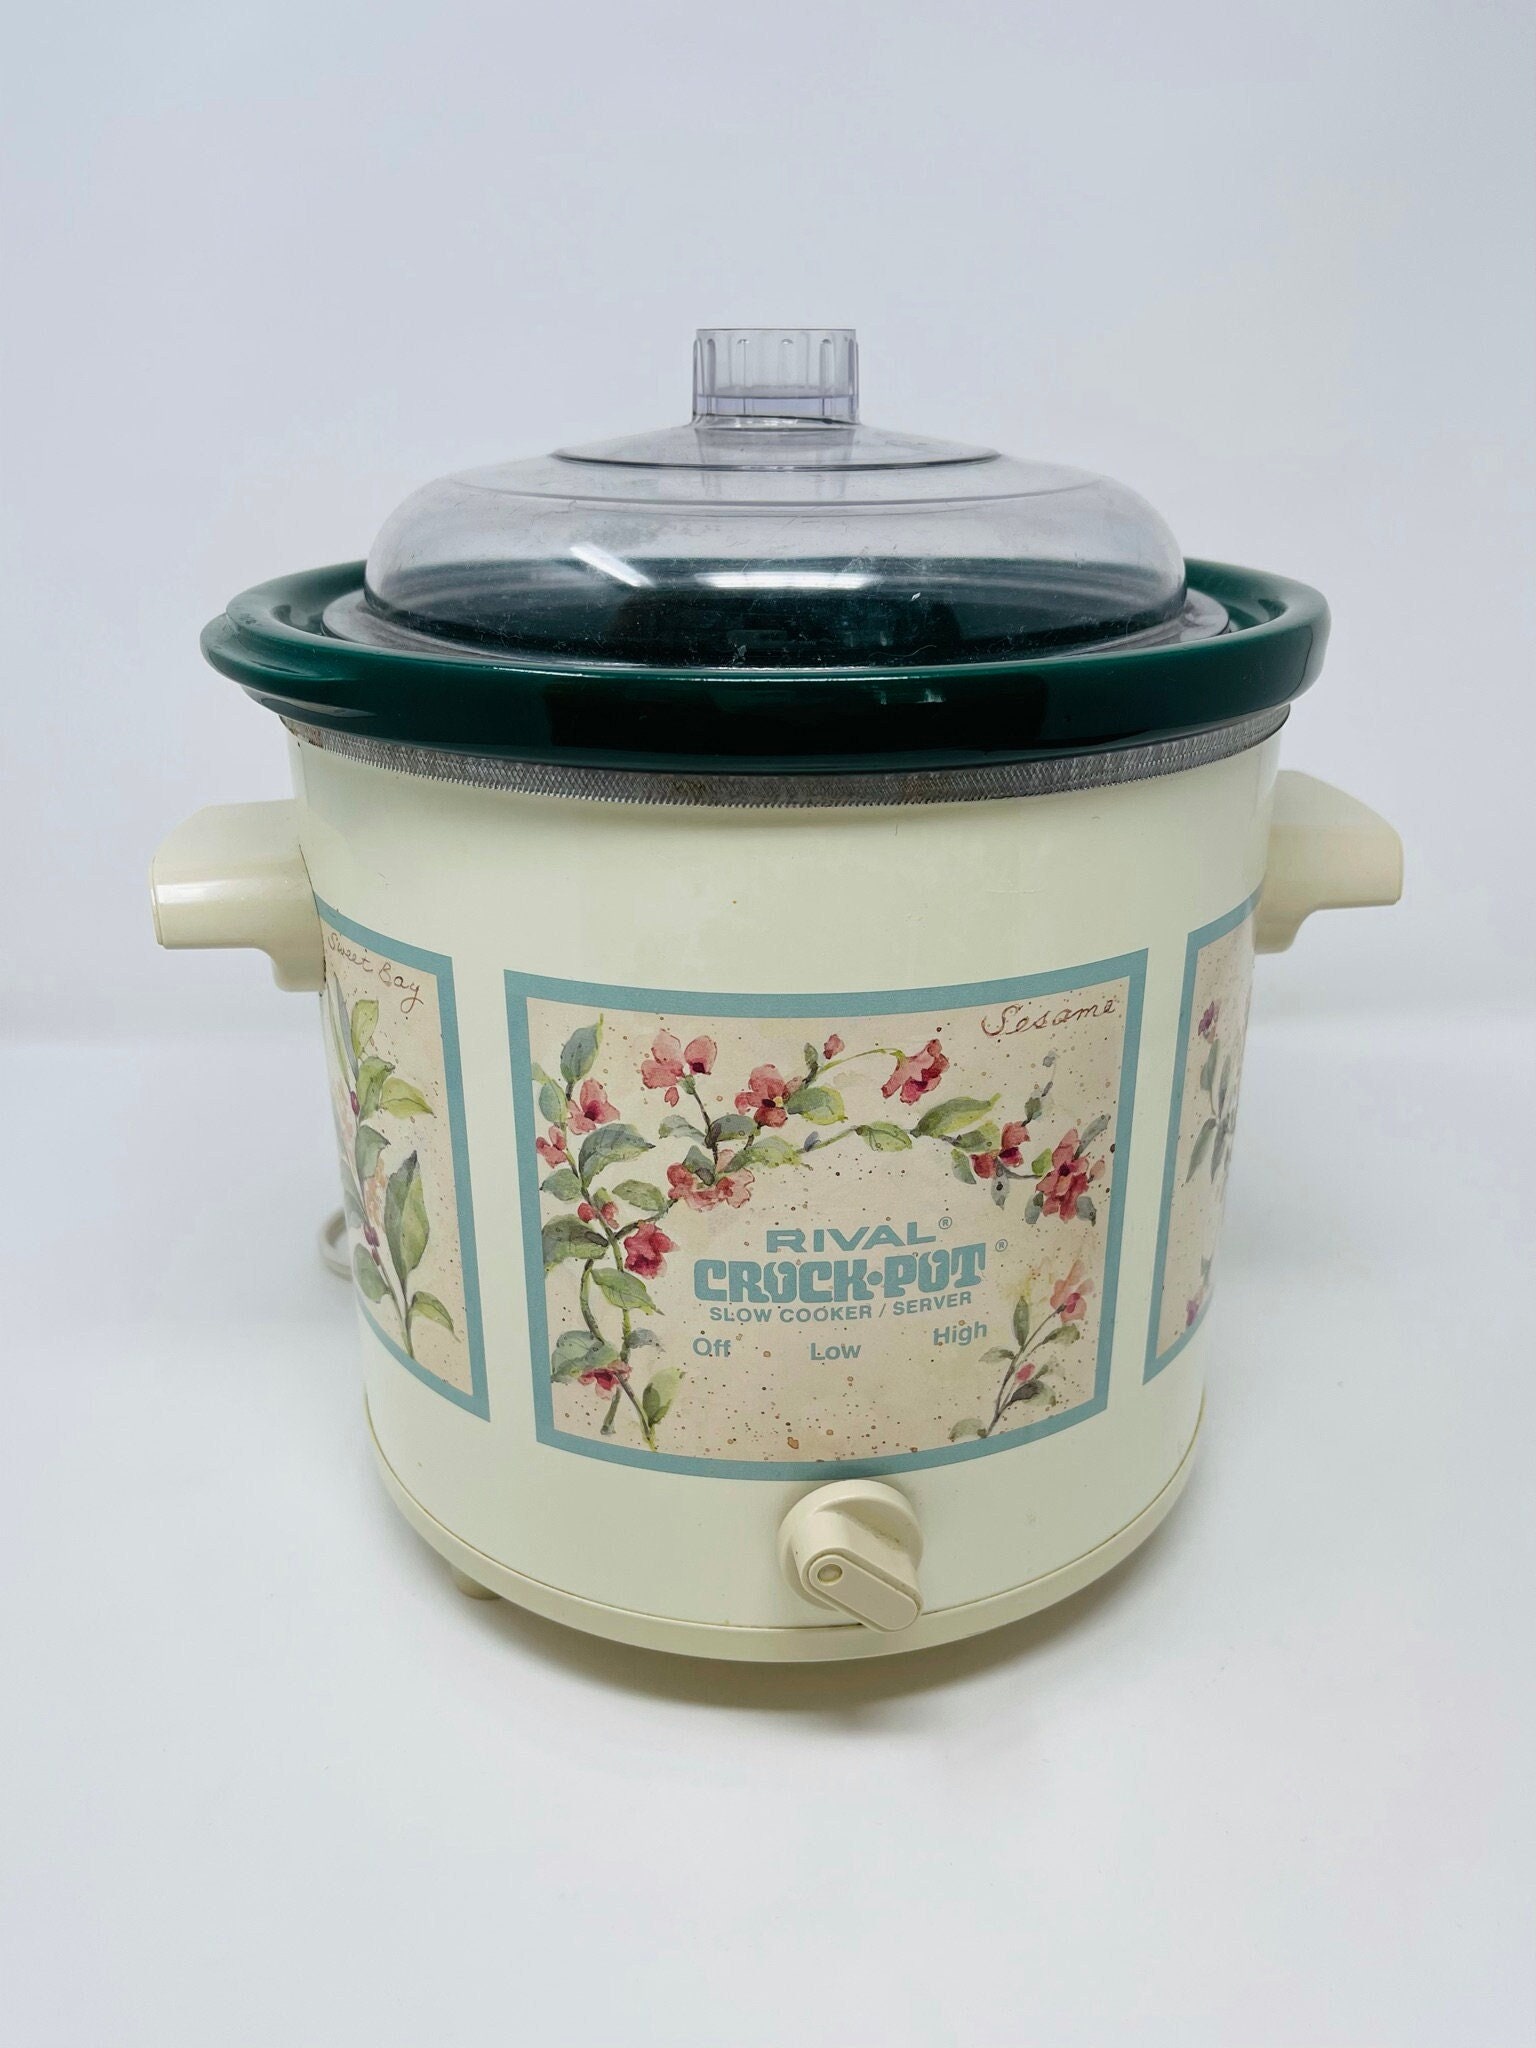 Vintage Rival Crockpot 3.5 Quart Floral Slow Cooker Herb Pattern